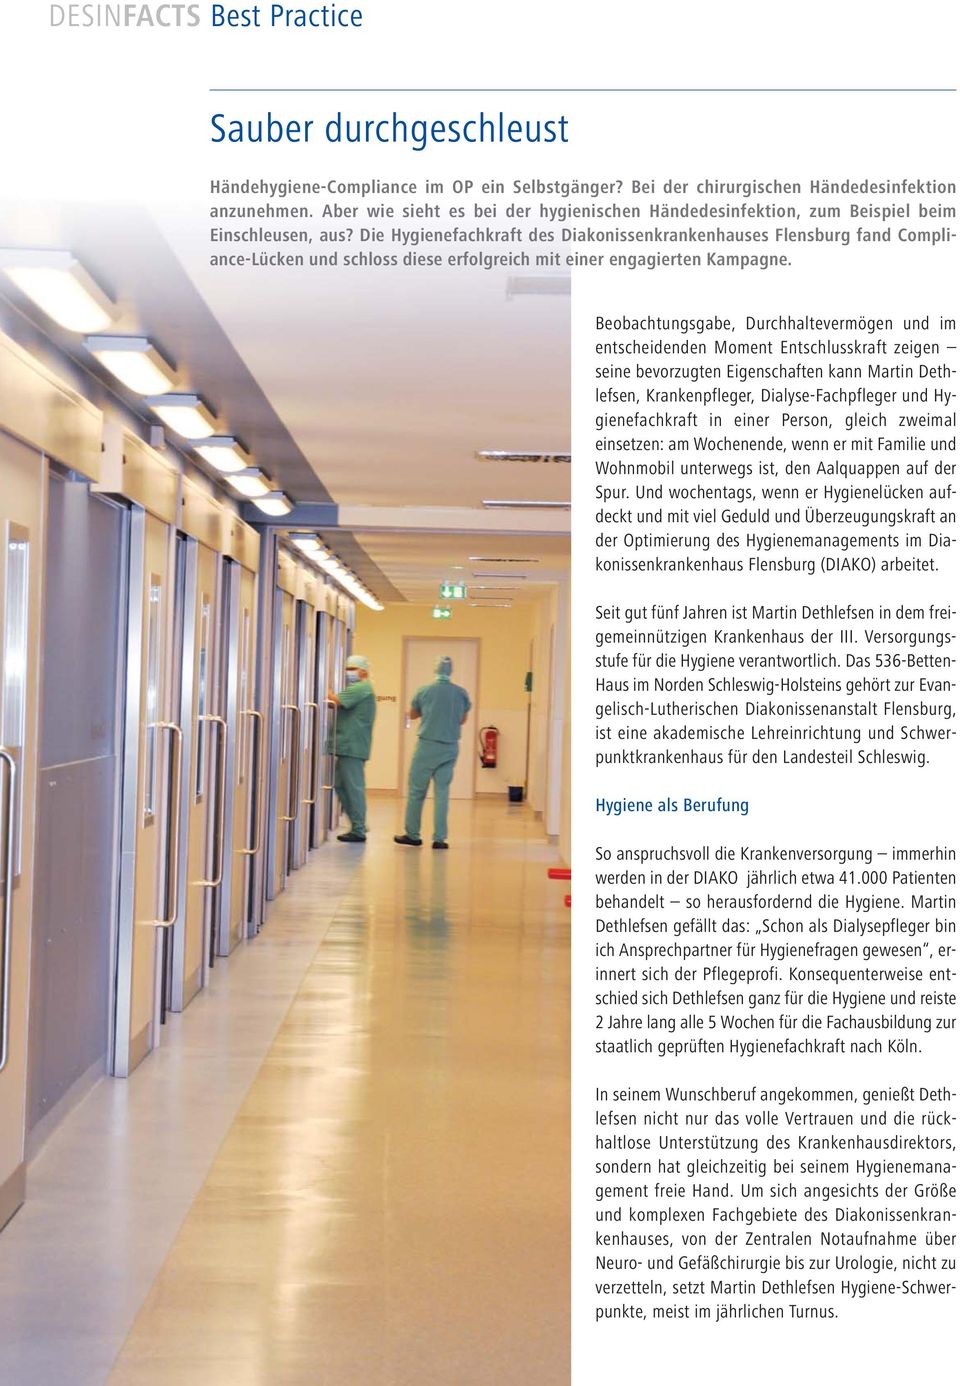 Die Hygienefachkraft des Diakonissenkrankenhauses Flensburg fand Compliance-Lücken und schloss diese erfolgreich mit einer engagierten Kampagne.